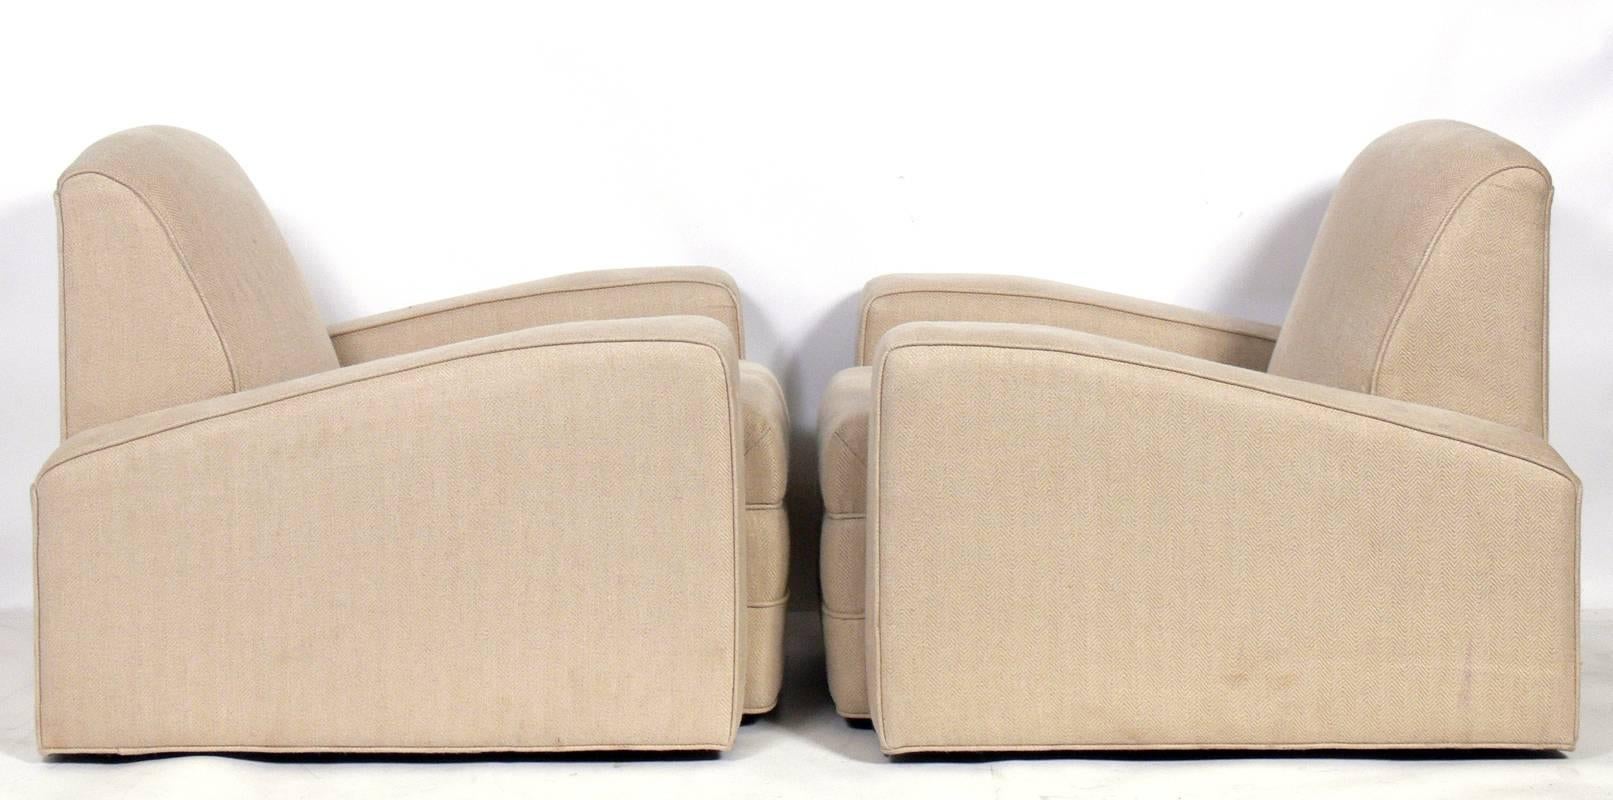 Ein Paar niedrige Art Deco Sessel, französisch, 1930er Jahre. Sie haben eine schicke, tief liegende Form. Sie werden gerade neu gepolstert und können mit Ihrem Stoff ergänzt werden. Der unten angegebene Preis beinhaltet die Neupolsterung in Ihrem